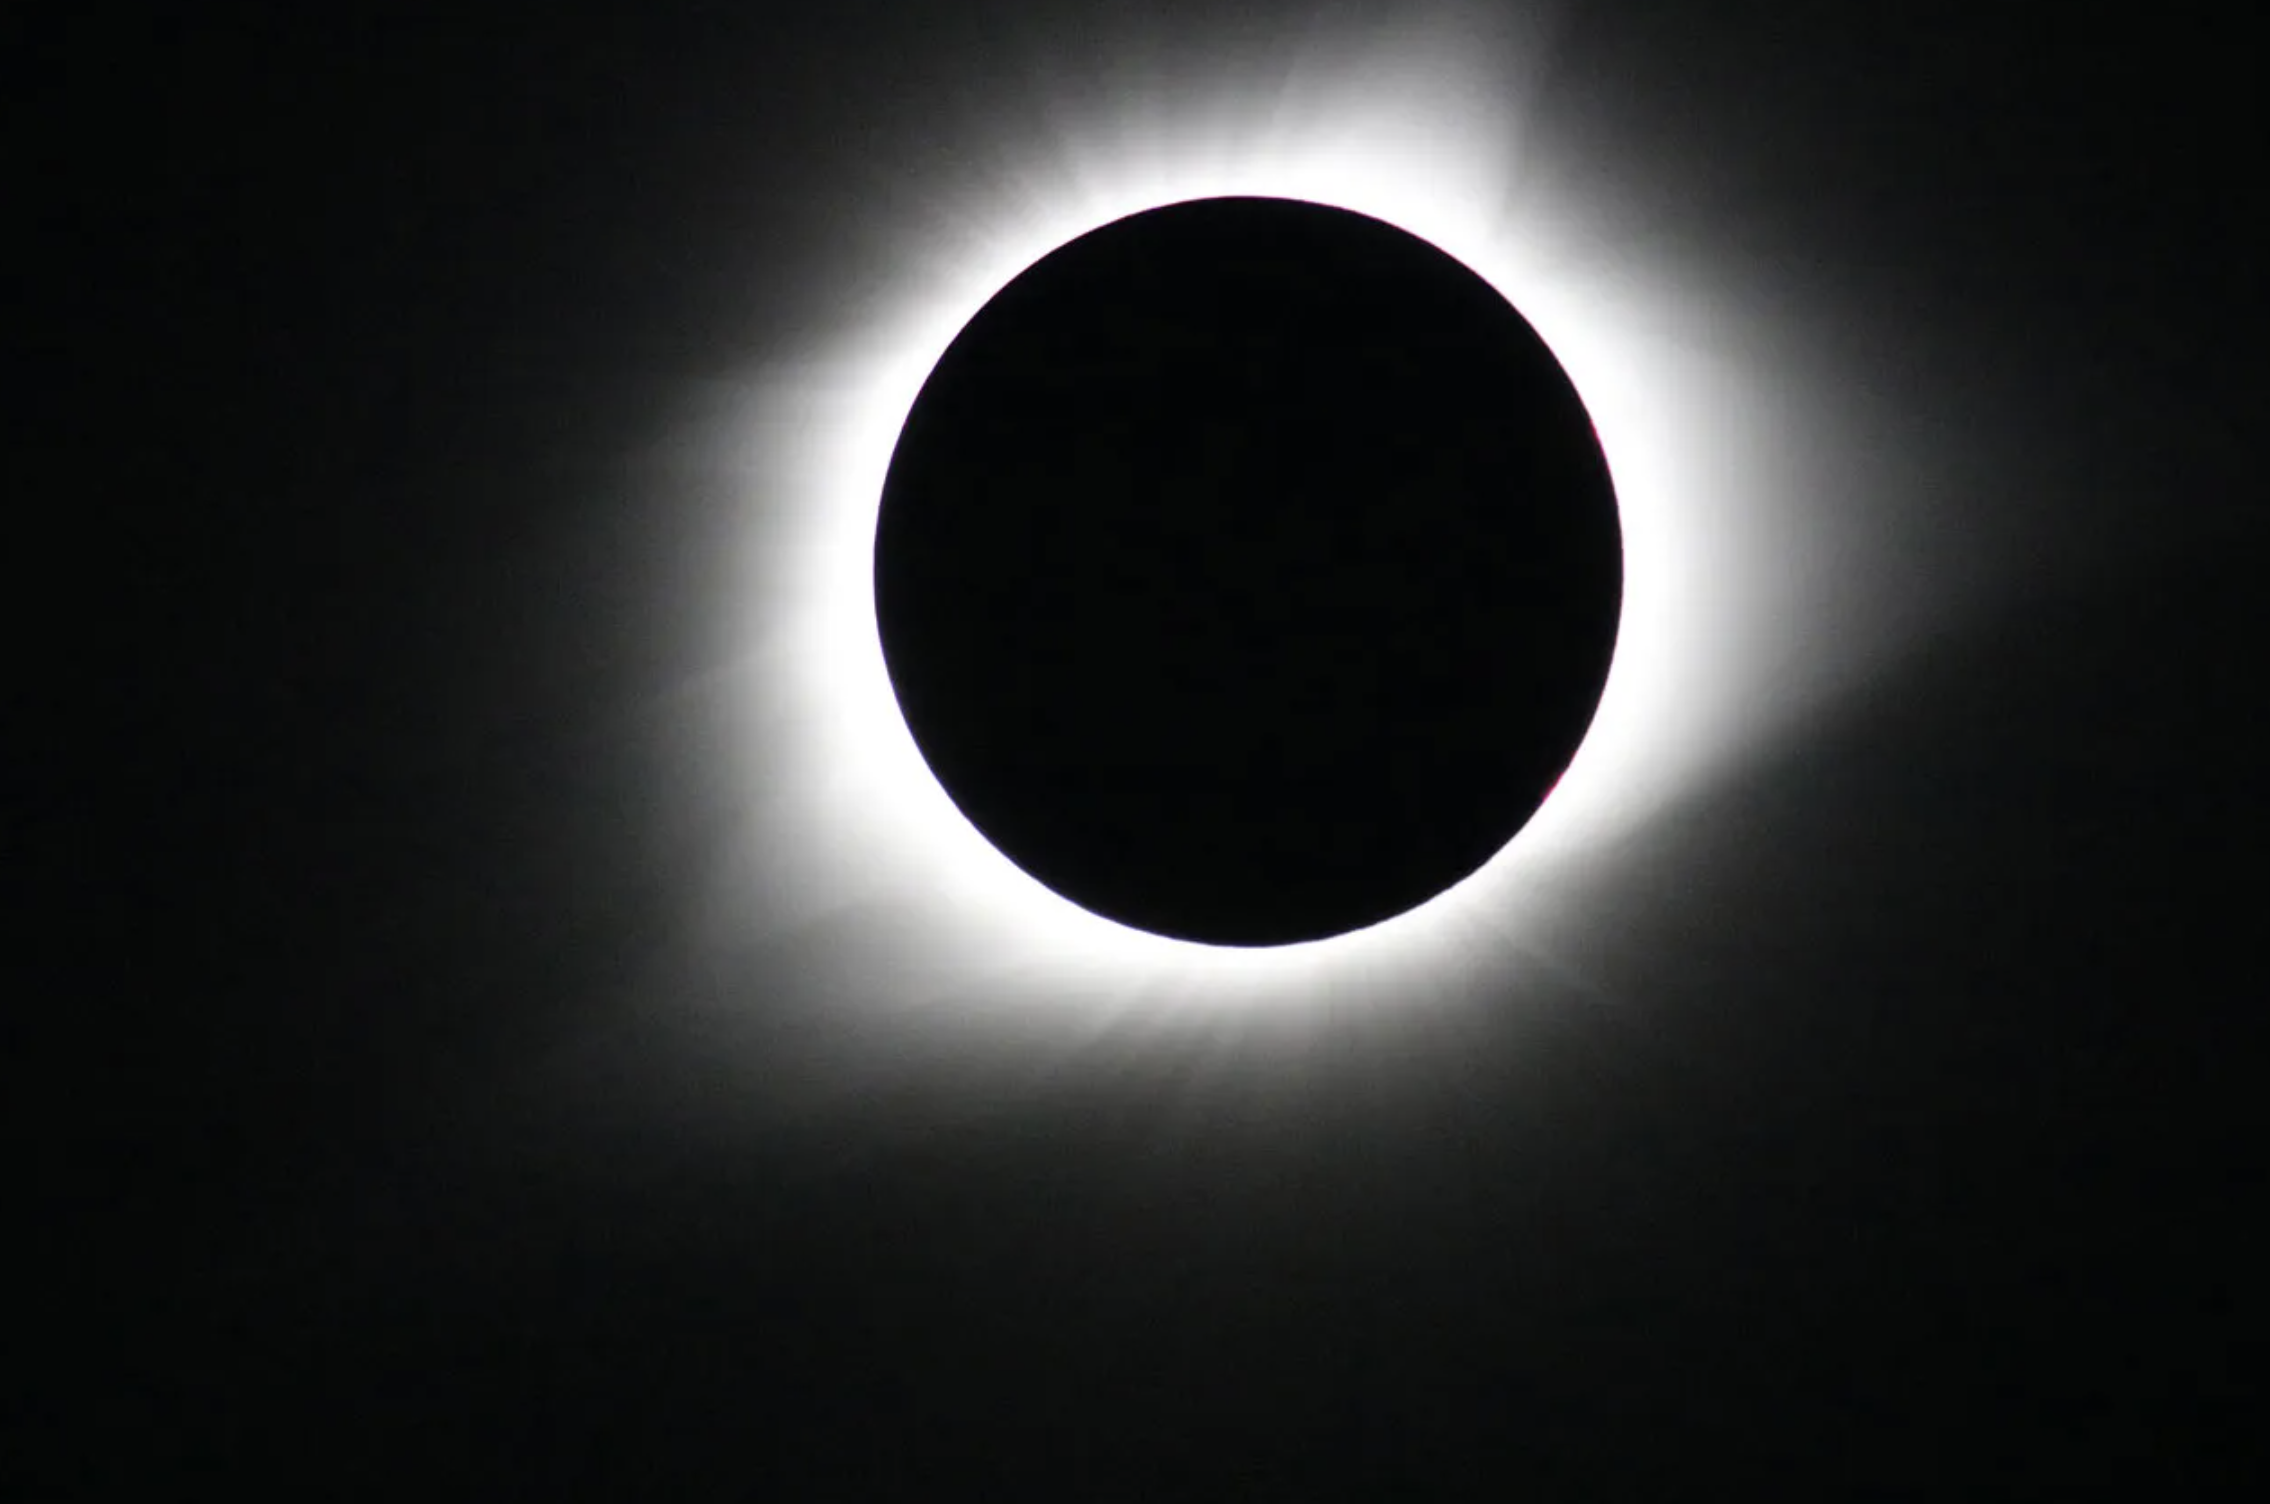 Esta imagen del eclipse solar total del 21 de agosto de 2017 fue tomada desde Madras, Oregón.NASA/Nat Gopalswamycorona del Sol, un halo blanco brillante, rodea el contorno de la Luna, un círculo negro en el centro de la imagen.